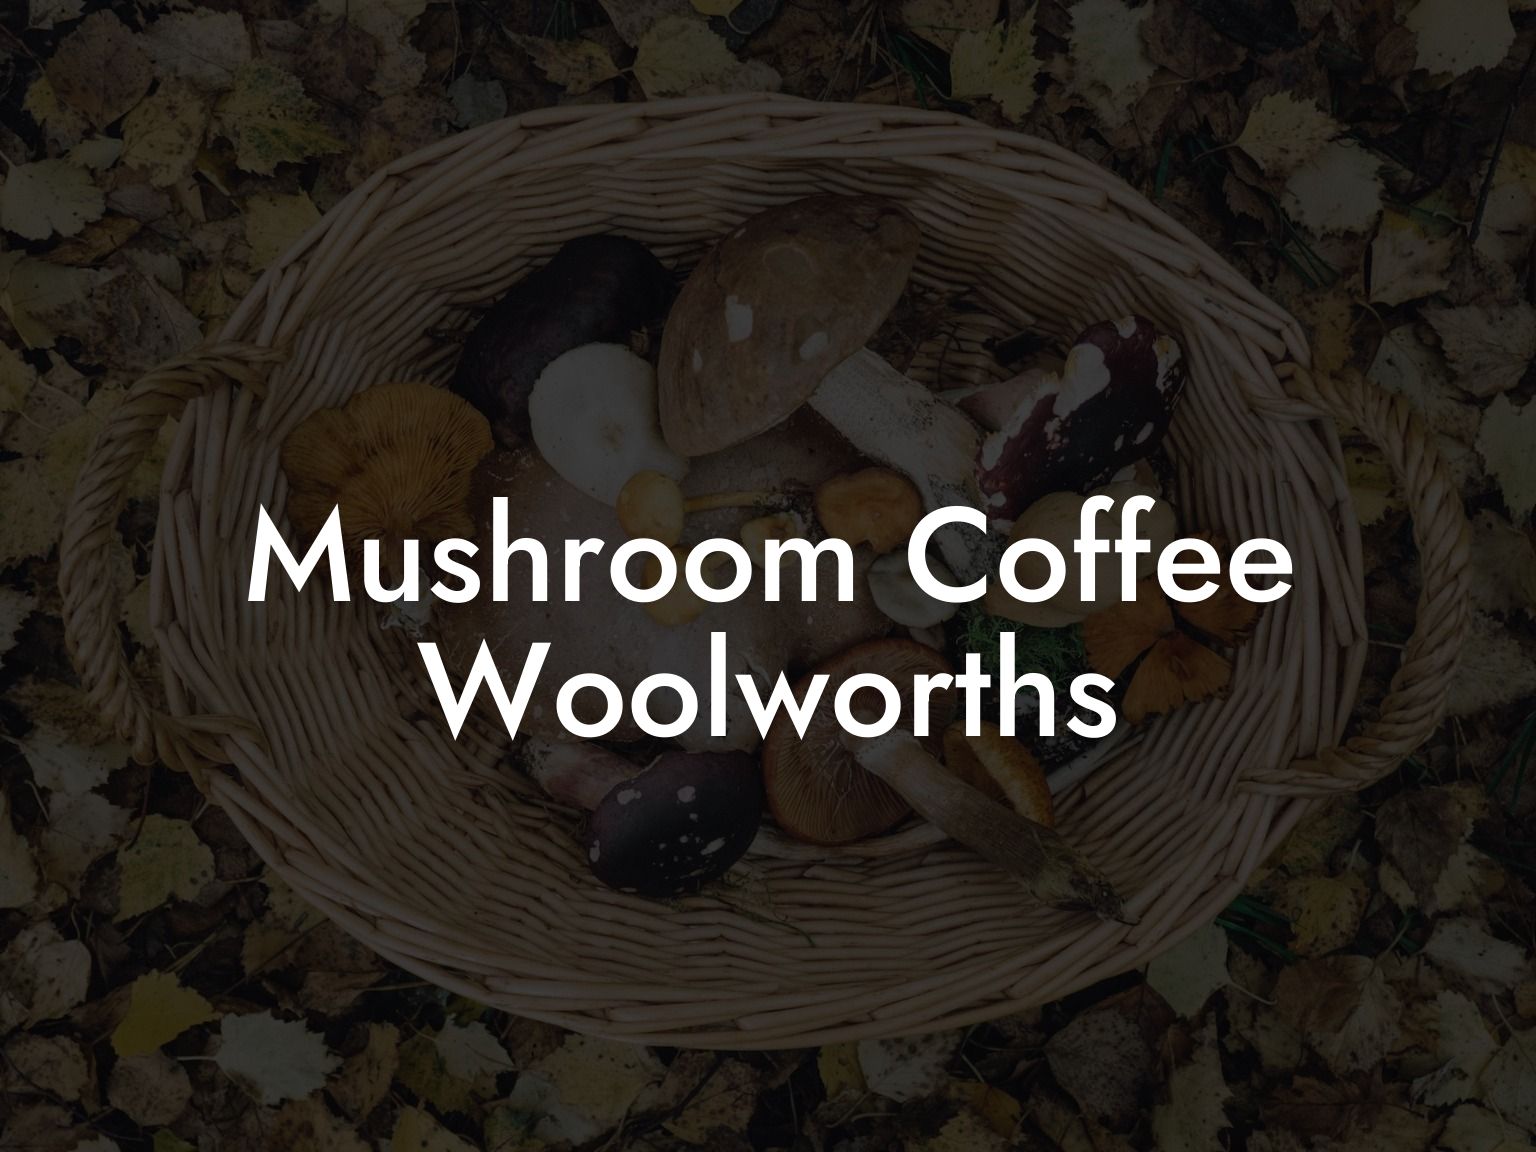 Mushroom Coffee Woolworths